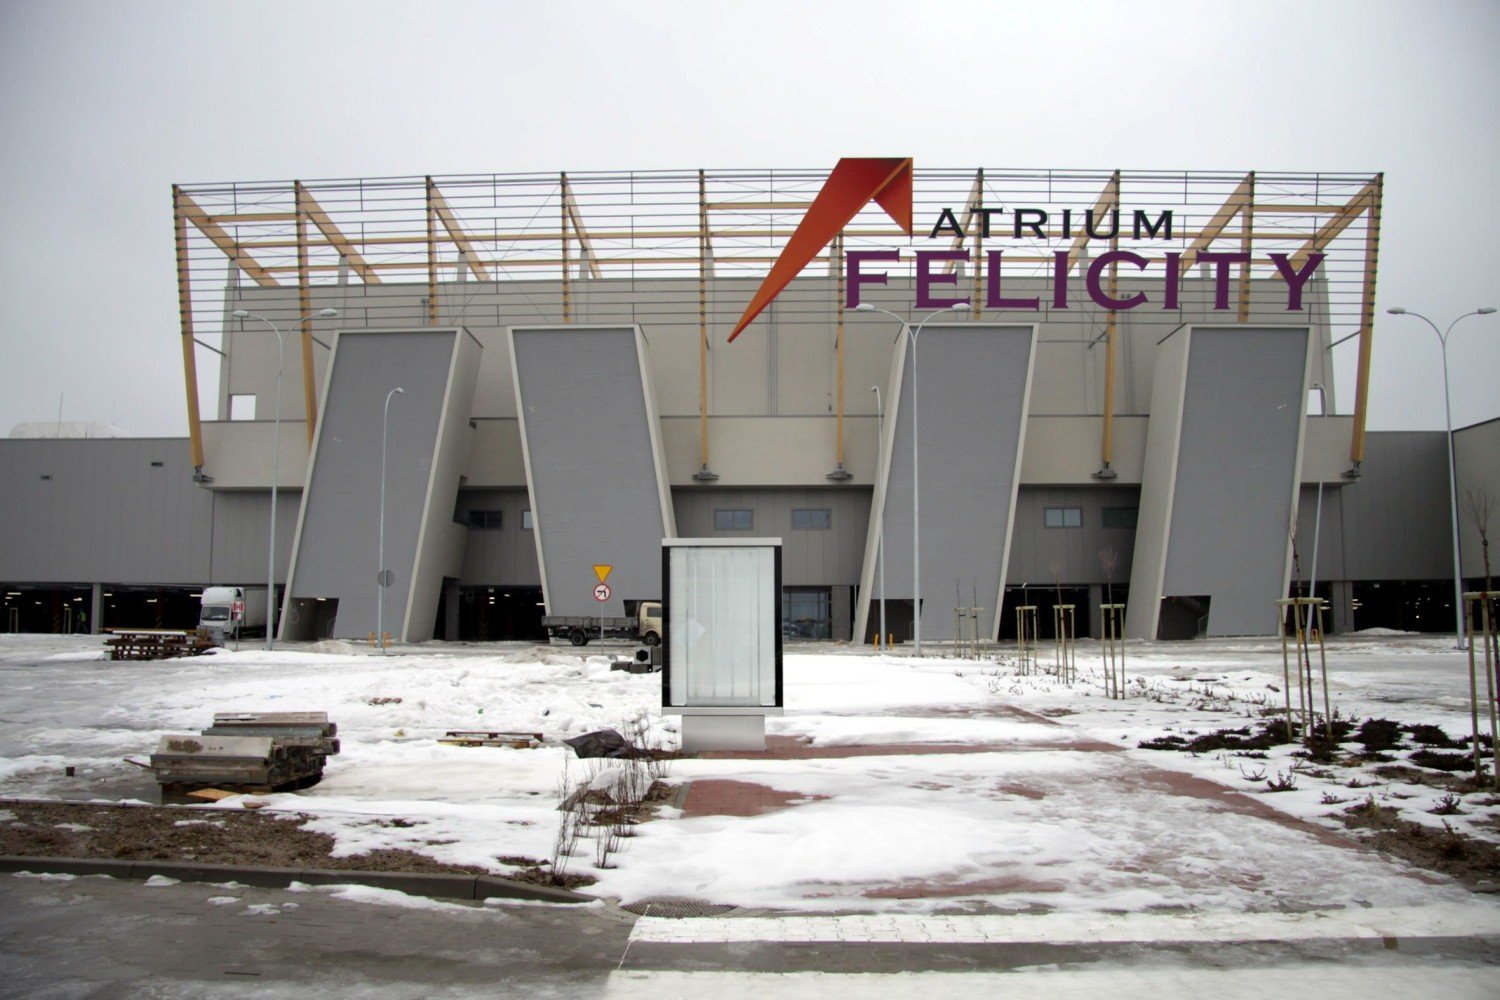 Wielkie centrum handlowe Felicity otwiera się na wiosnę (ZDJĘCIA) | Lublin  Nasze Miasto